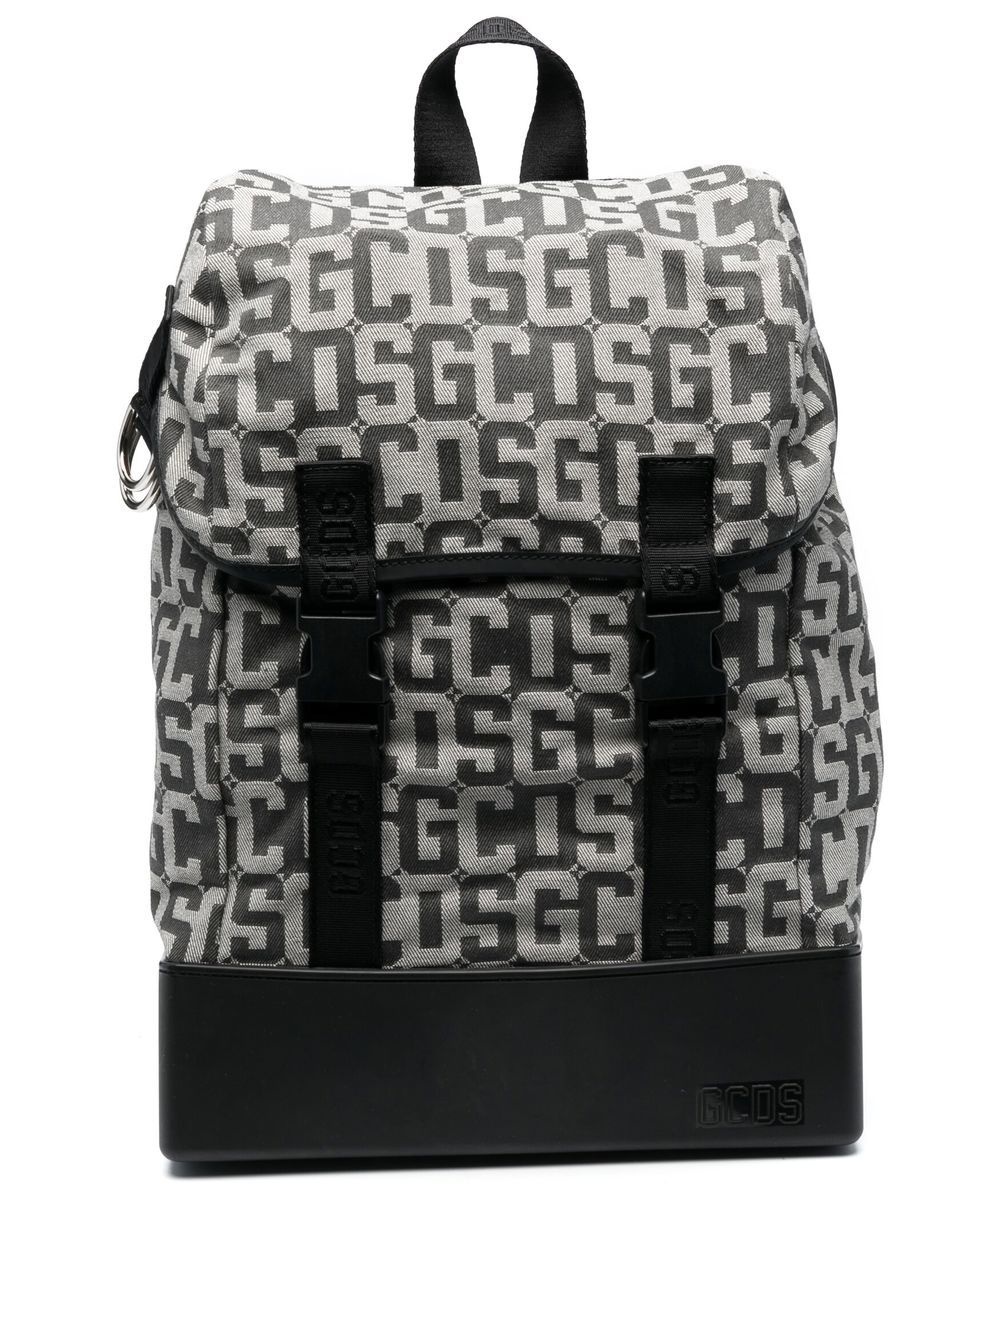 monogram-pattern drawstring backpack - 1